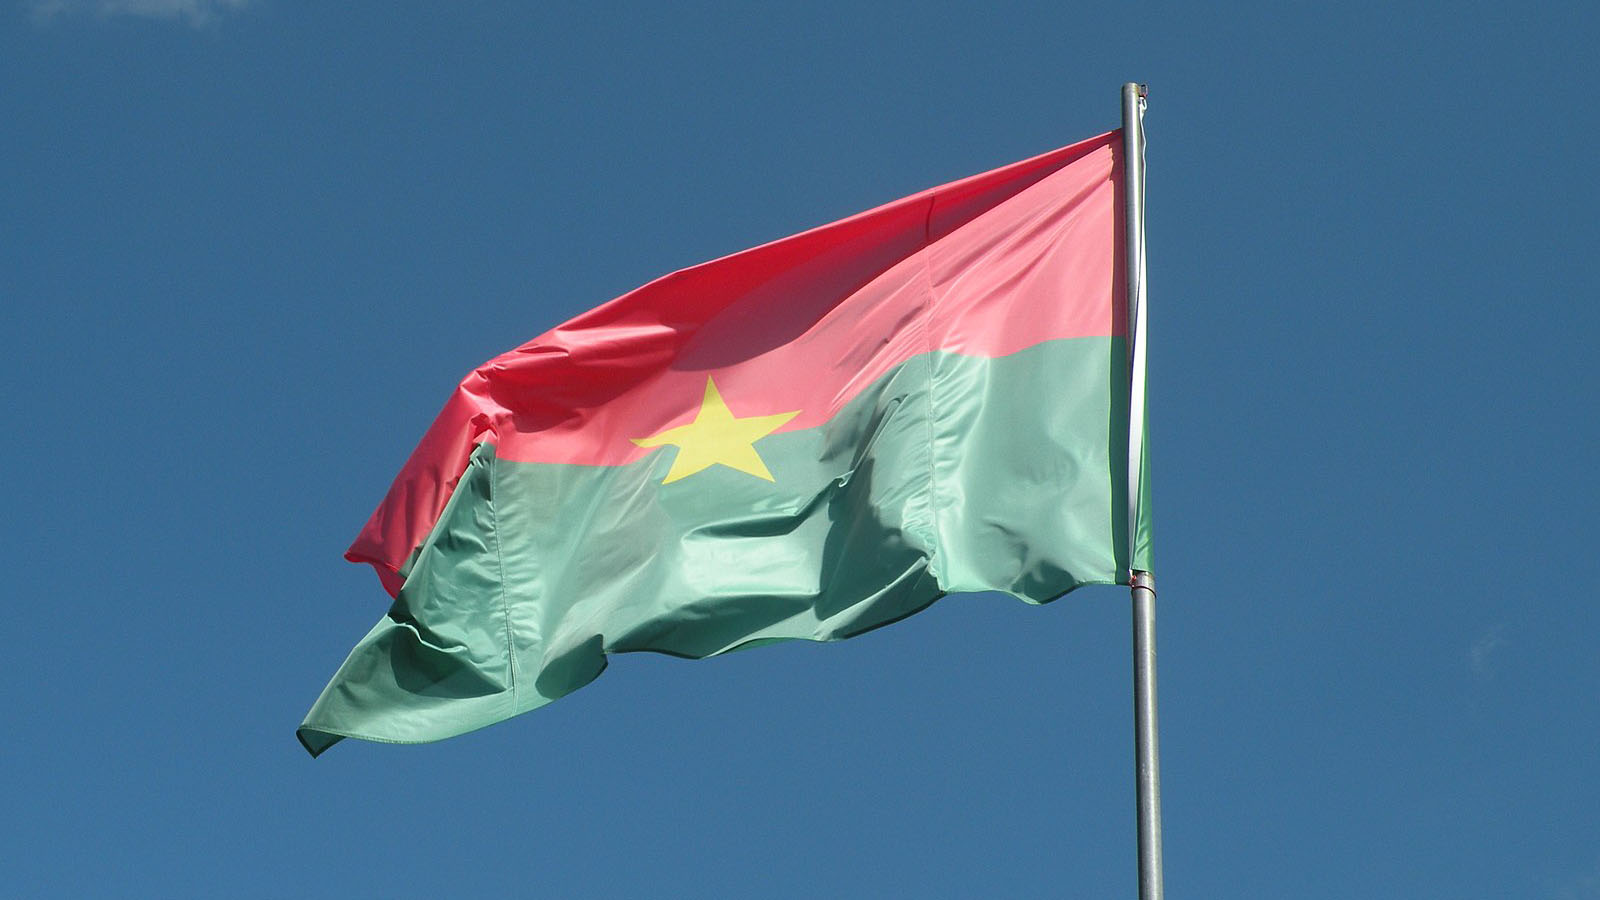 Burkina Faso : SOPAM SA saisit les créances et le matériel des filiales du  groupe Bolloré 